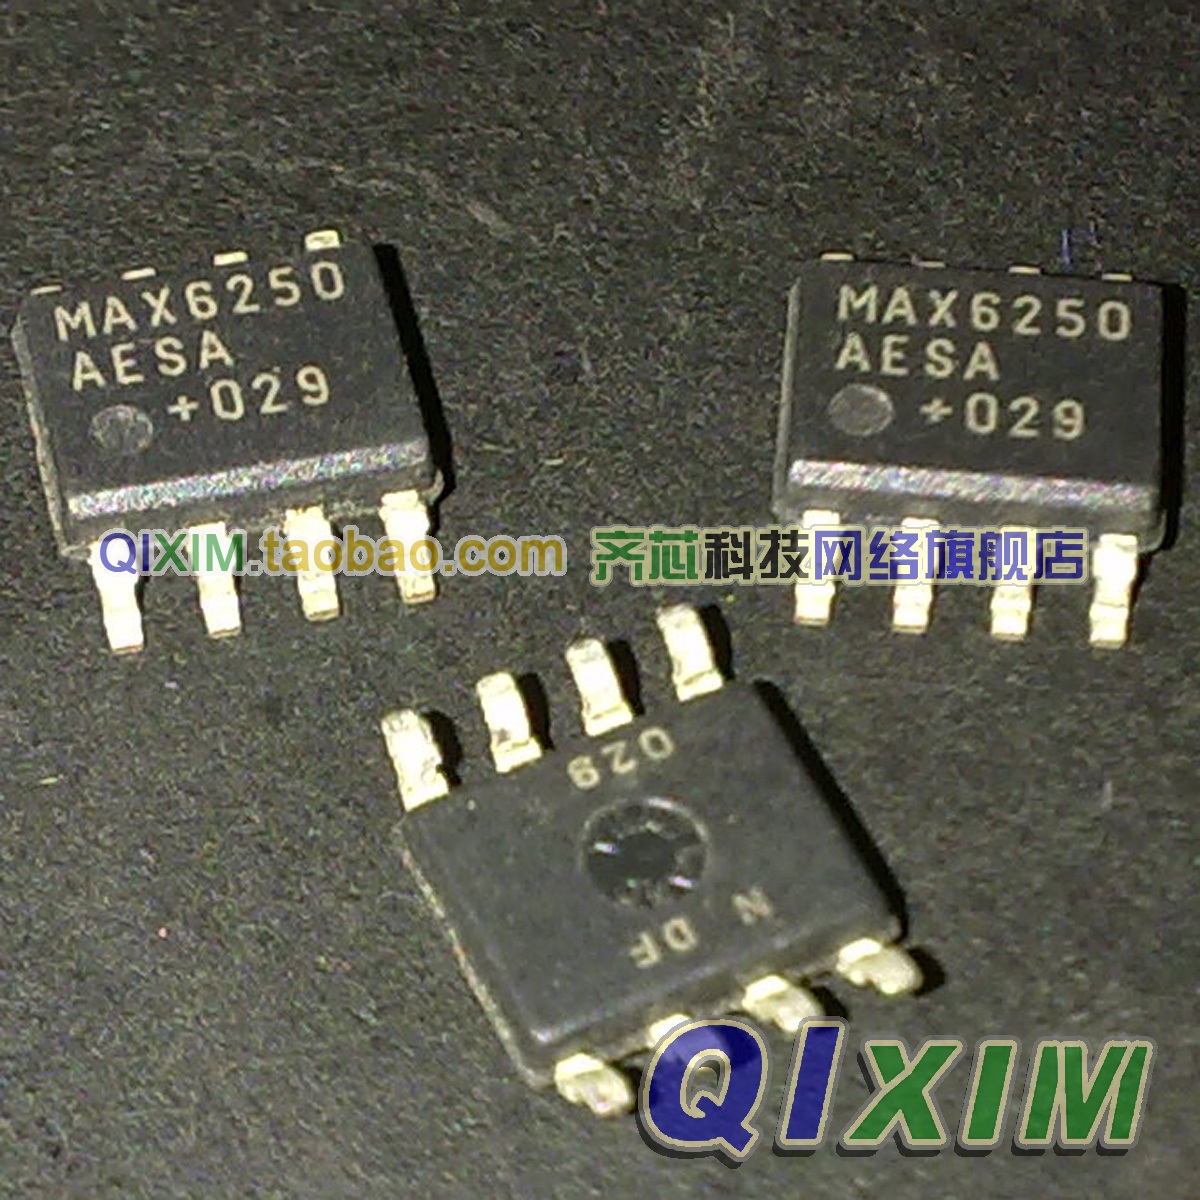 【齐芯科技】进口原装 MAX6250AESA +5V电压基准 MAX6250ACSA